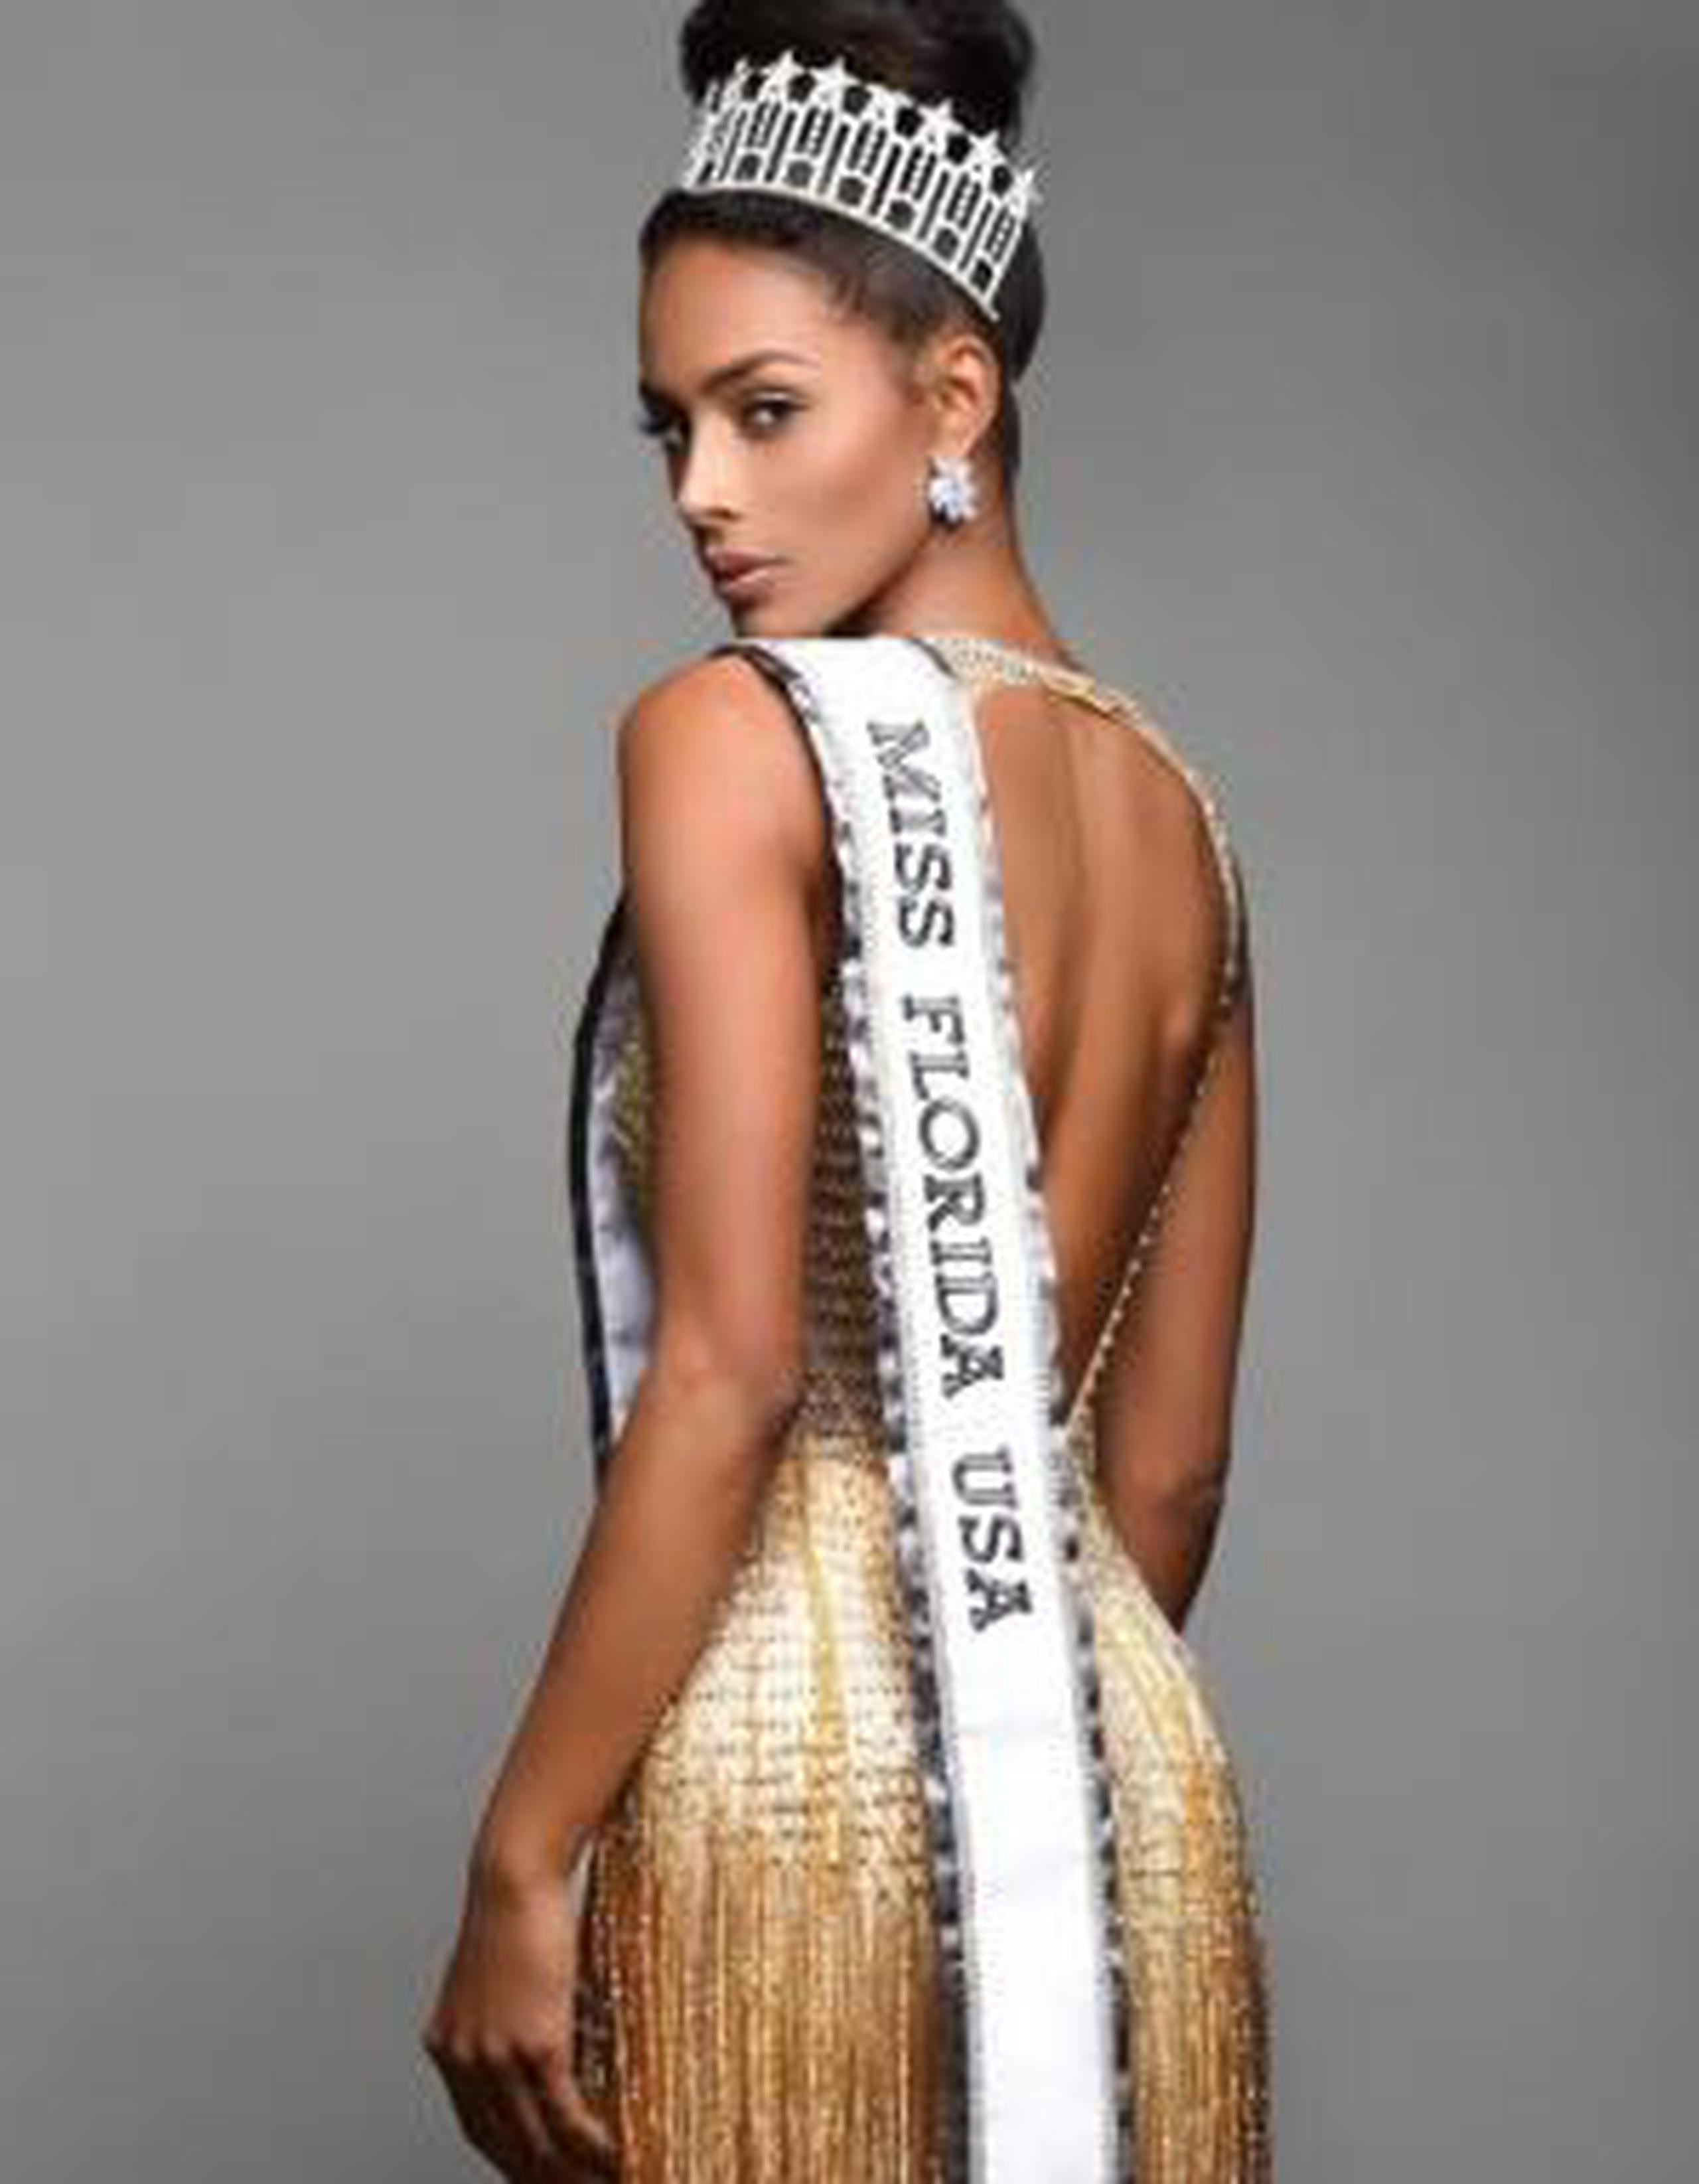 La puertorriqueña fue parte del top 5 de Miss USA 2018. (Suministrada)